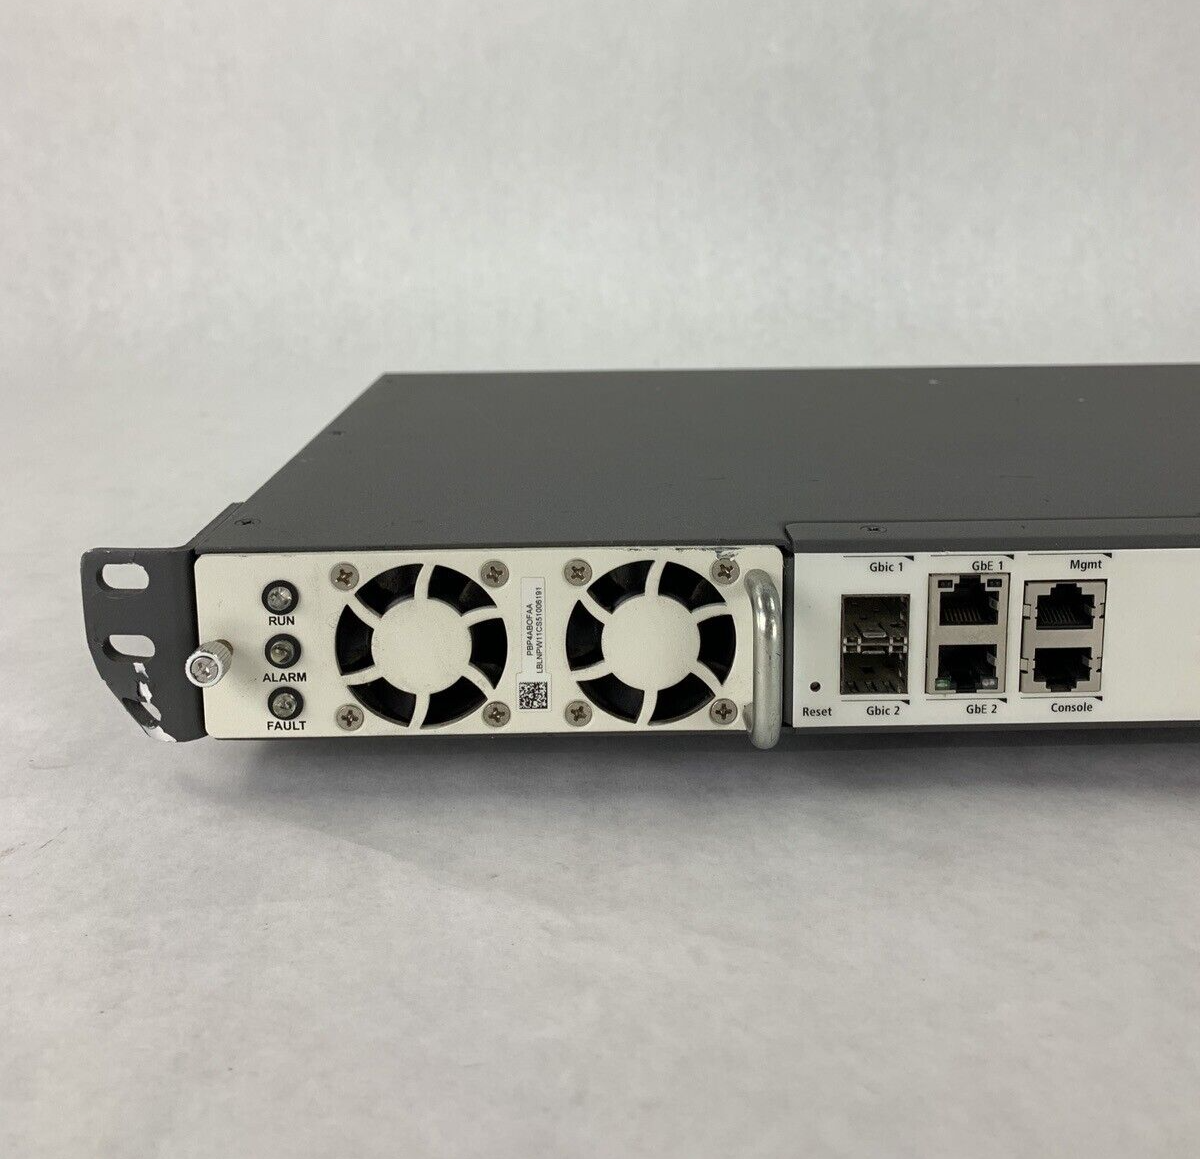 Mitel Unit T48 Port Streamline Switch 50006594 PL-048-MTL Tested